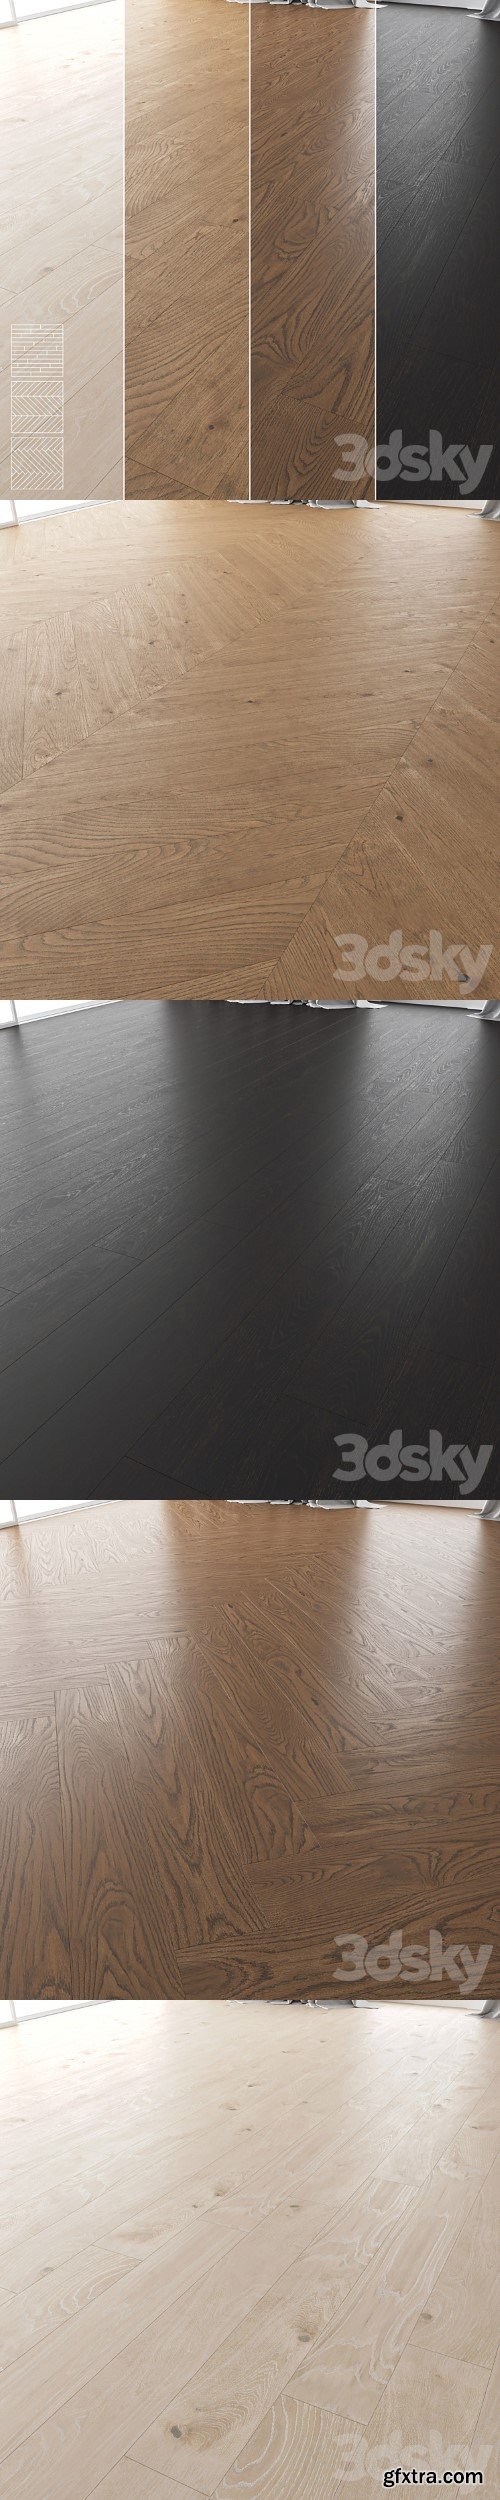 Wood Floor Set 01